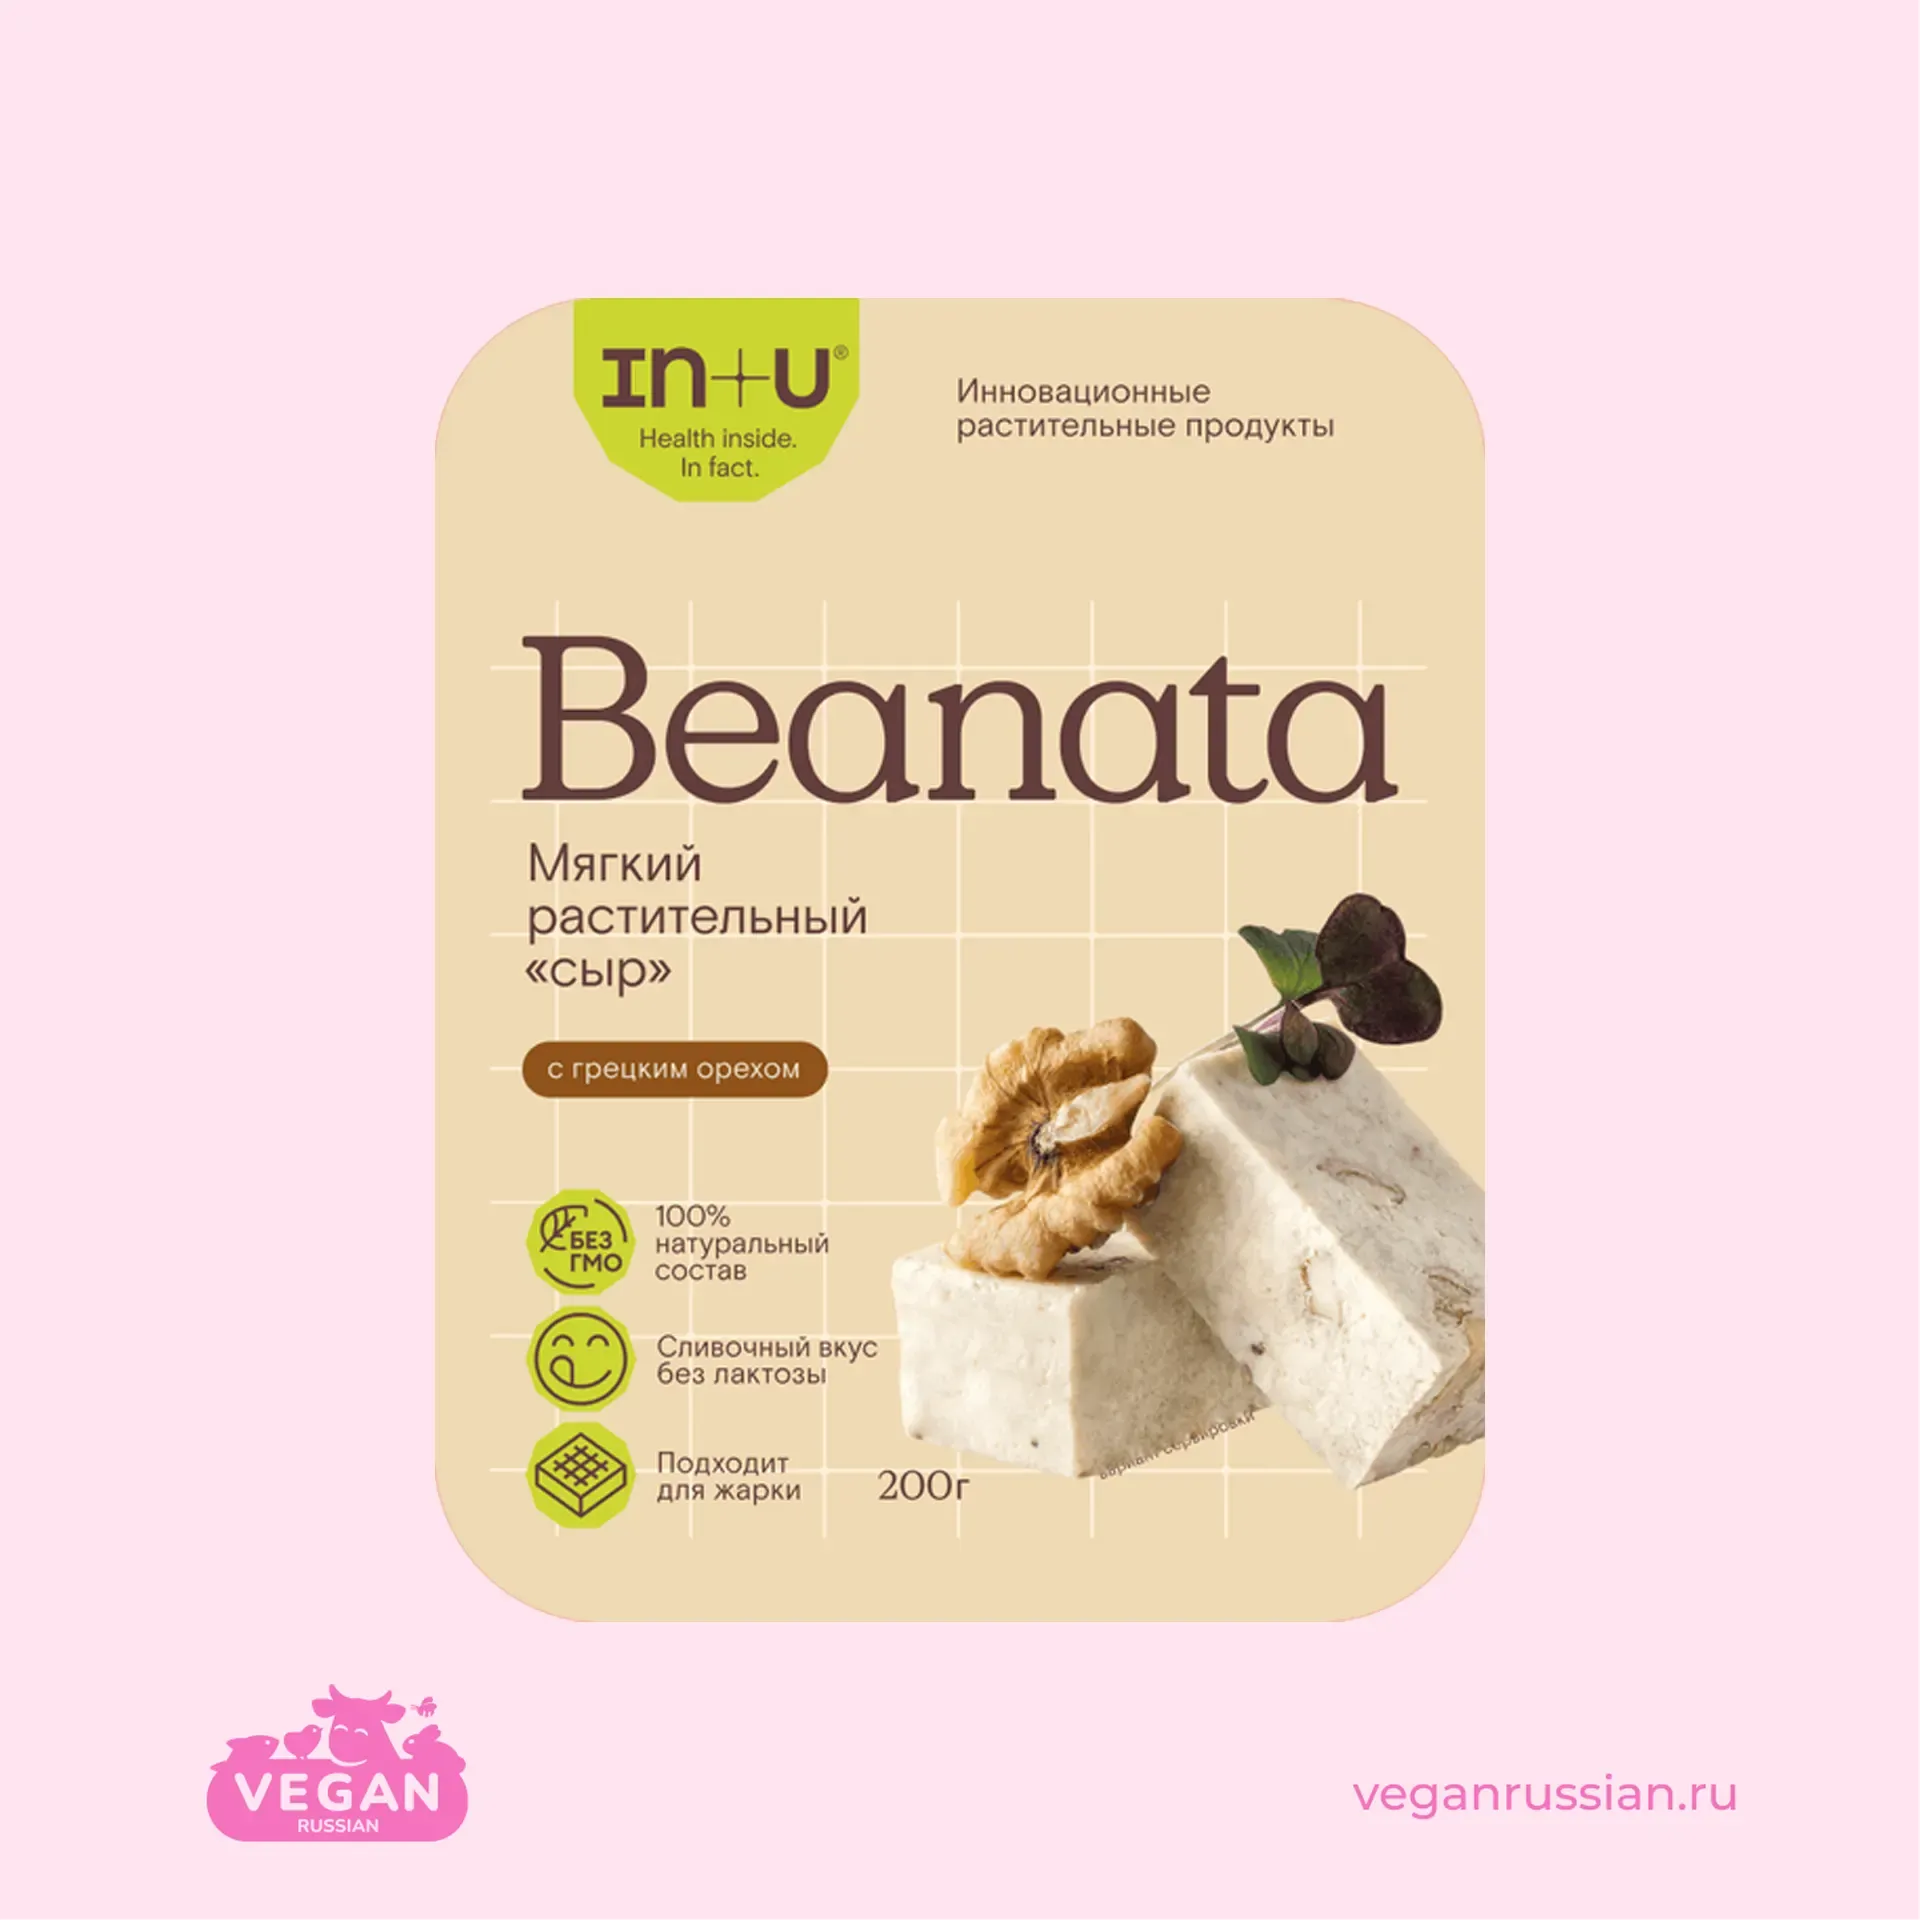 Мягкий растительный сыр c с грецким орехом Beanata In+U 200 г